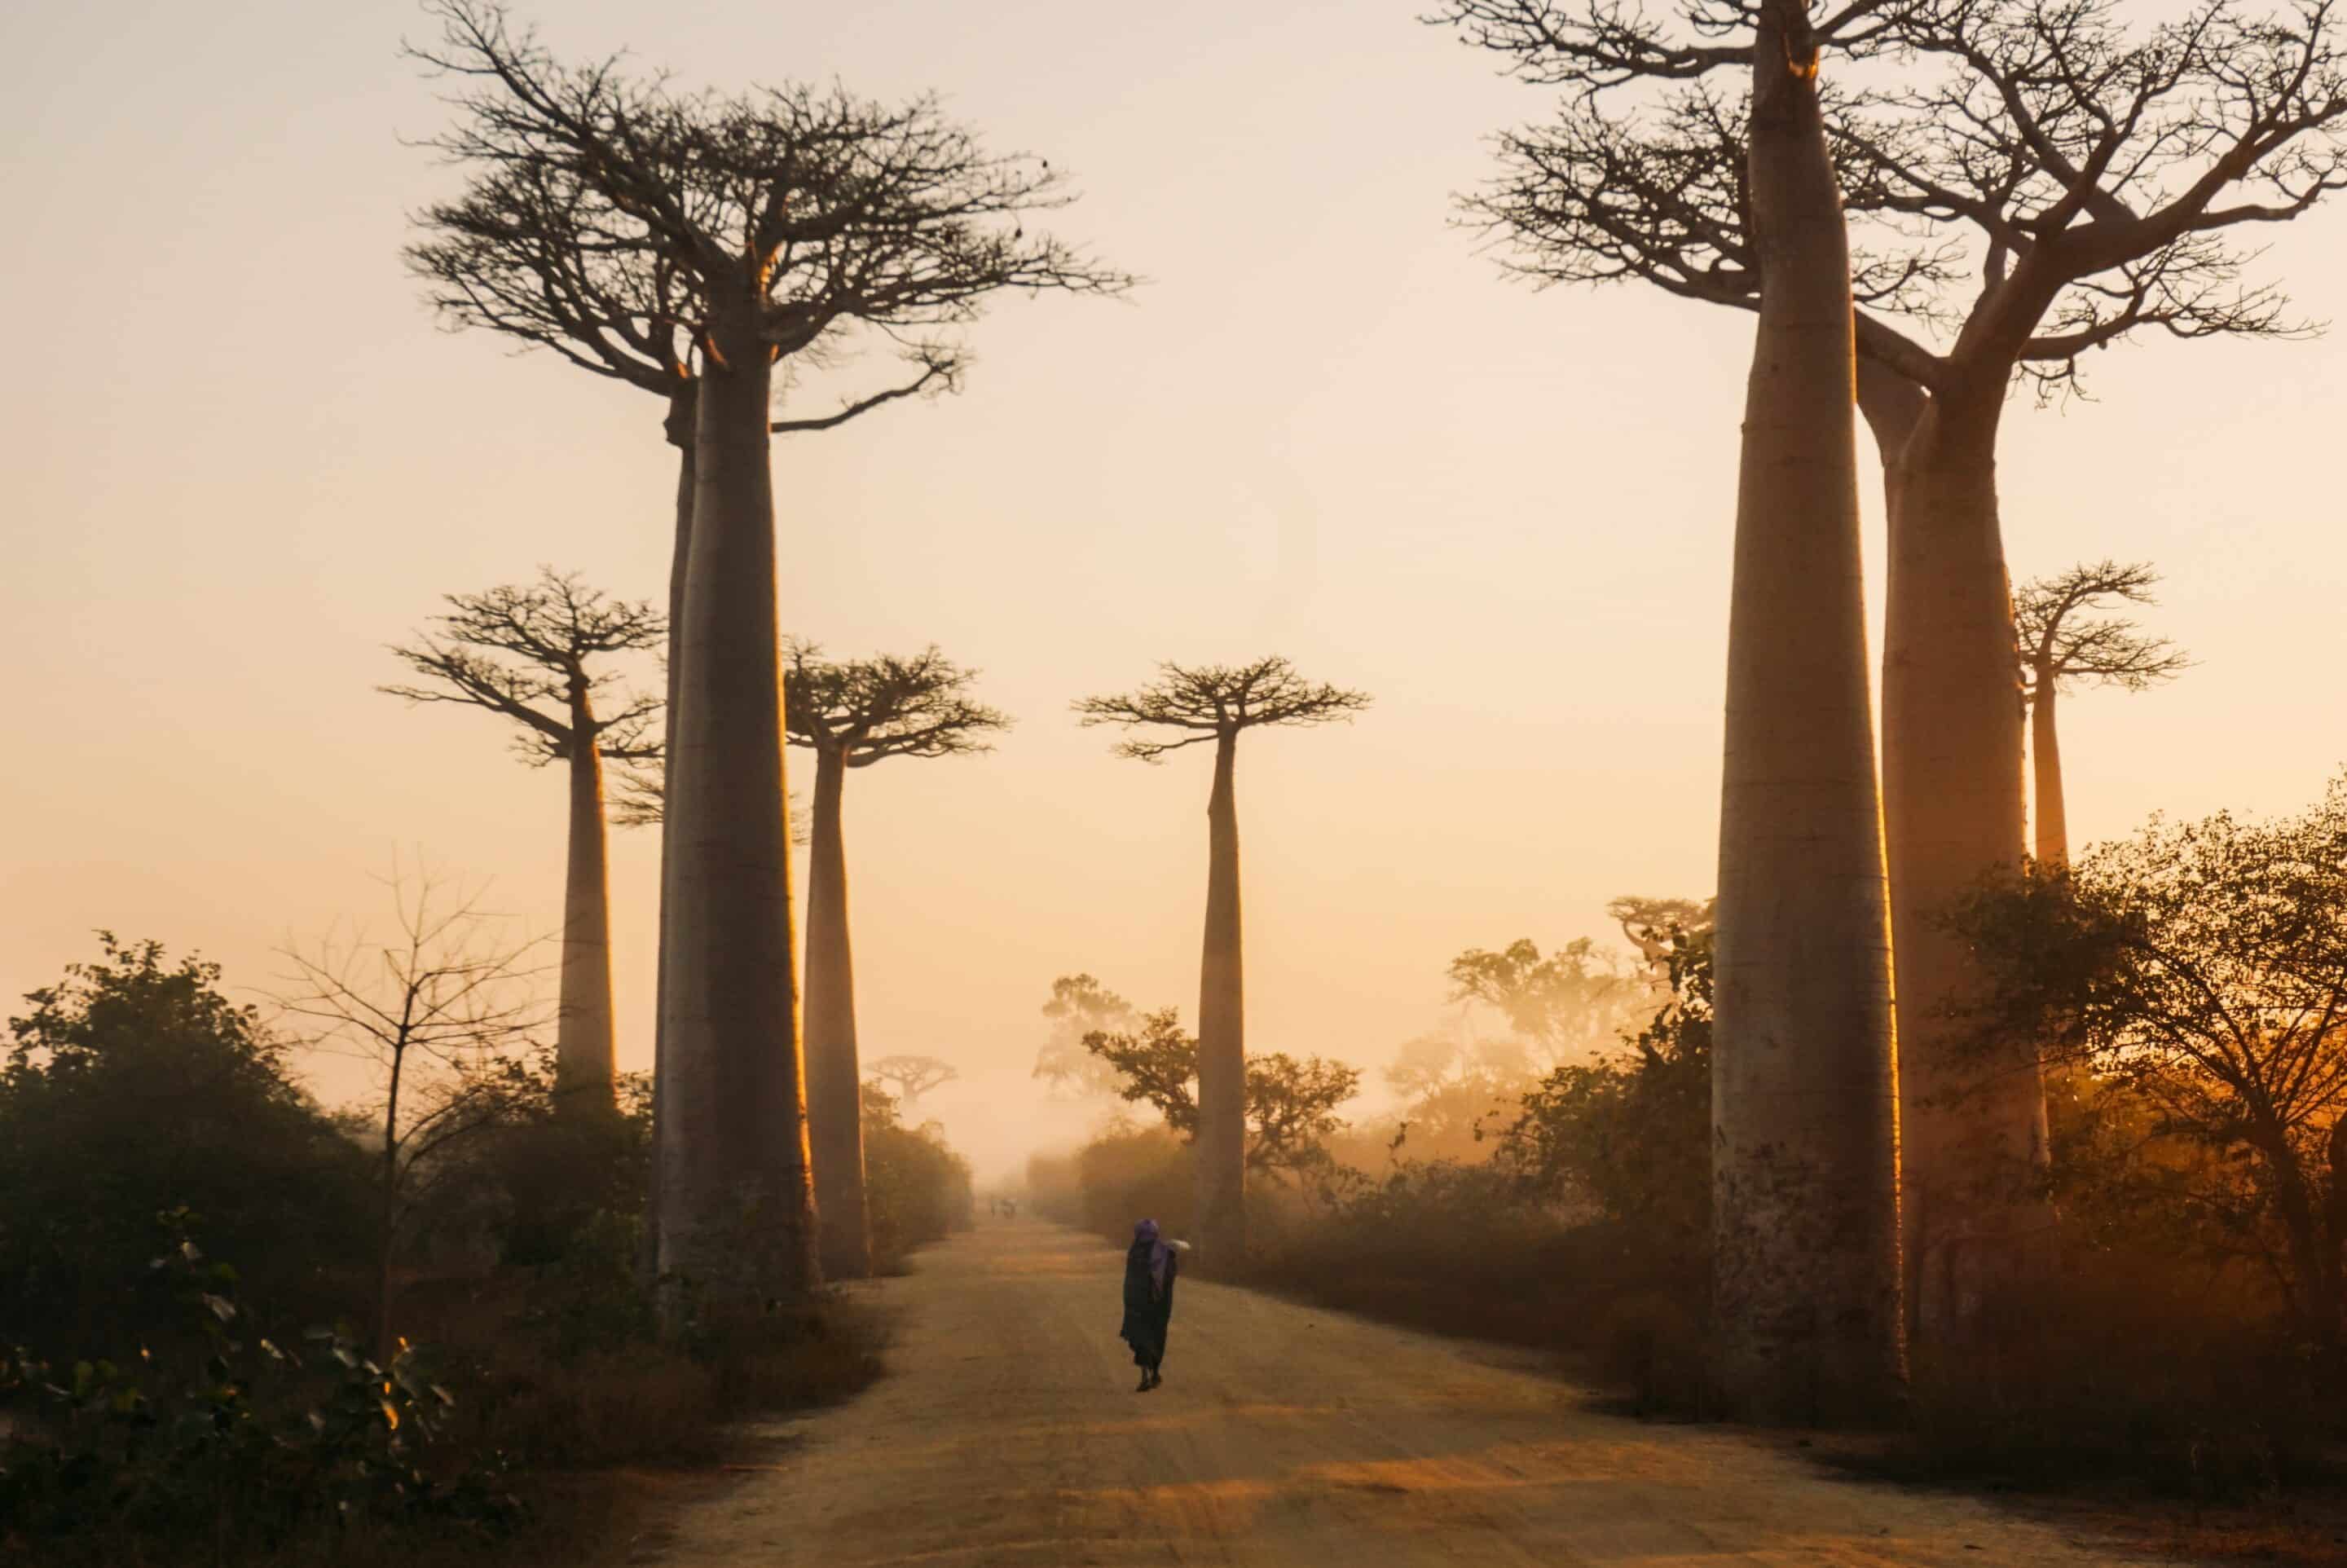 Les racines du baobab. La construction d’une identité nationale à Madagascar